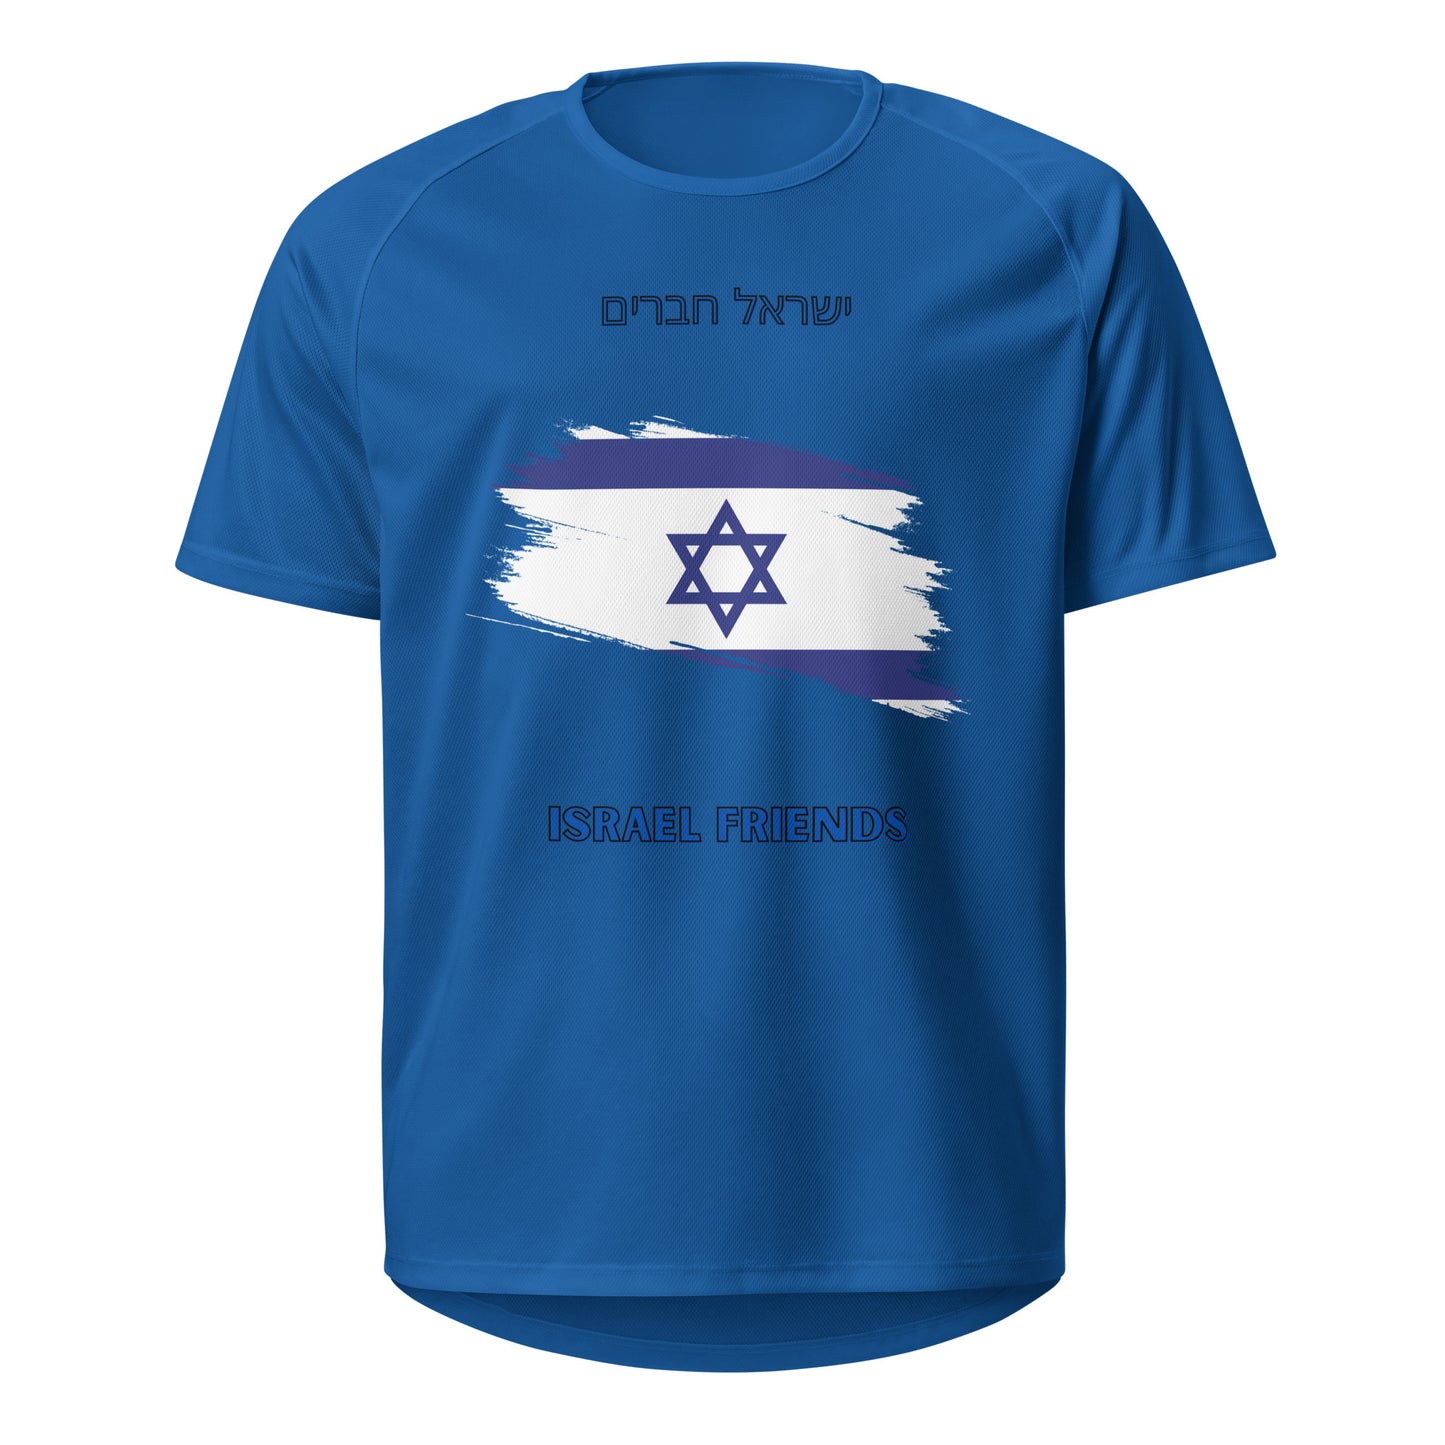 0-A-00 Israel Friends Unisex sports jersey